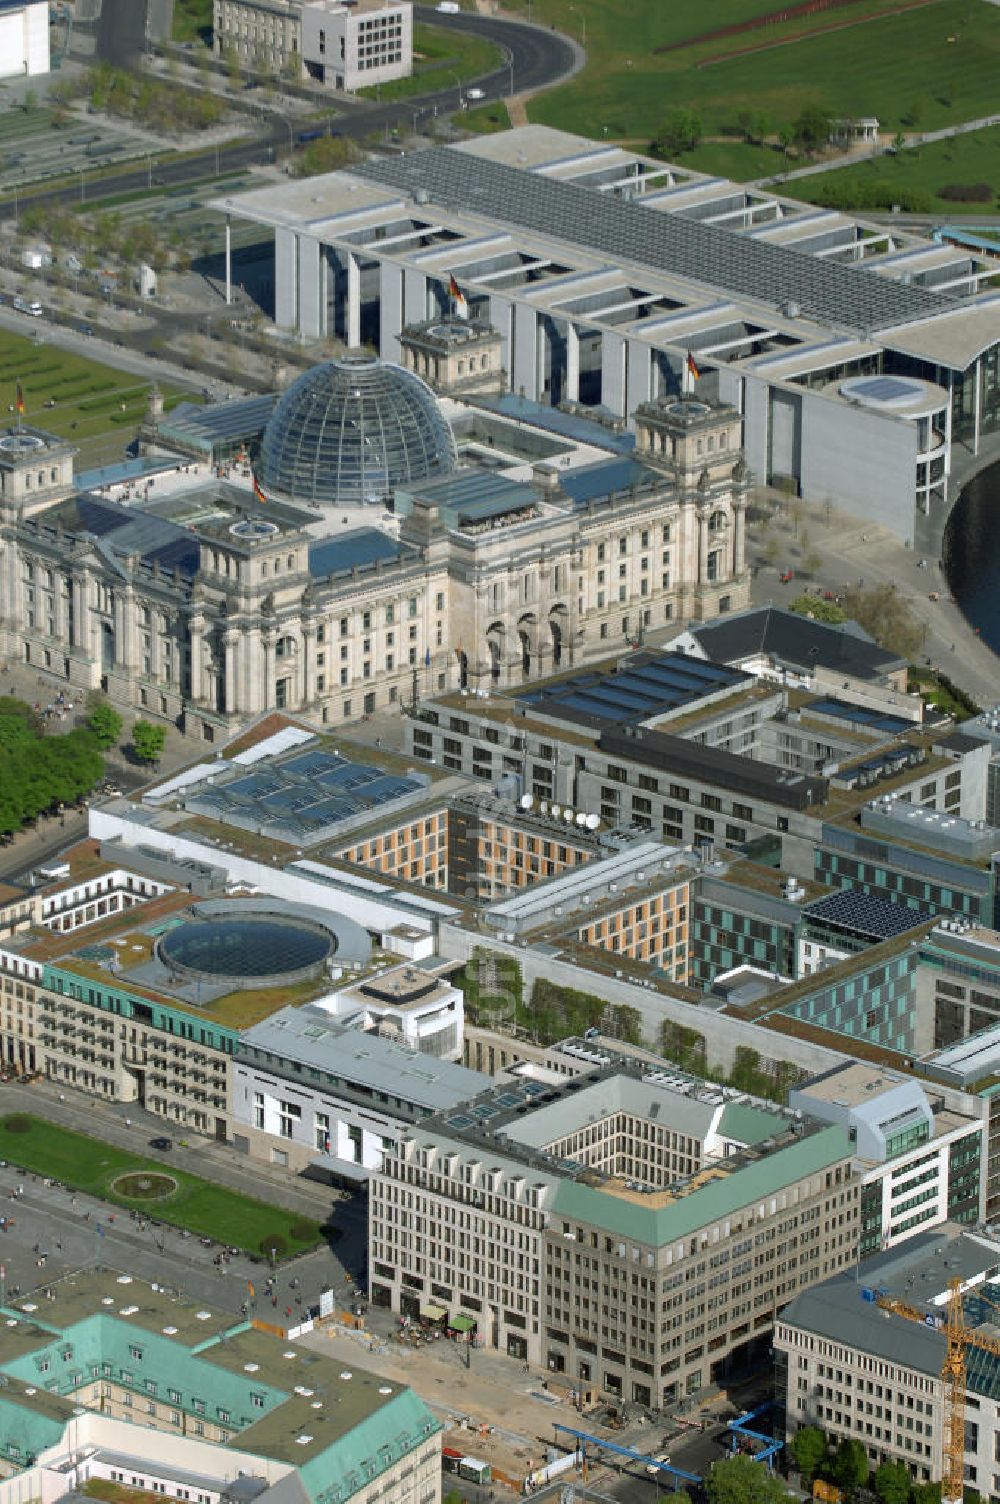 Berlin aus der Vogelperspektive: Bereich des Pariser Platz am Brandenburger Tor in Berlin-Mitte